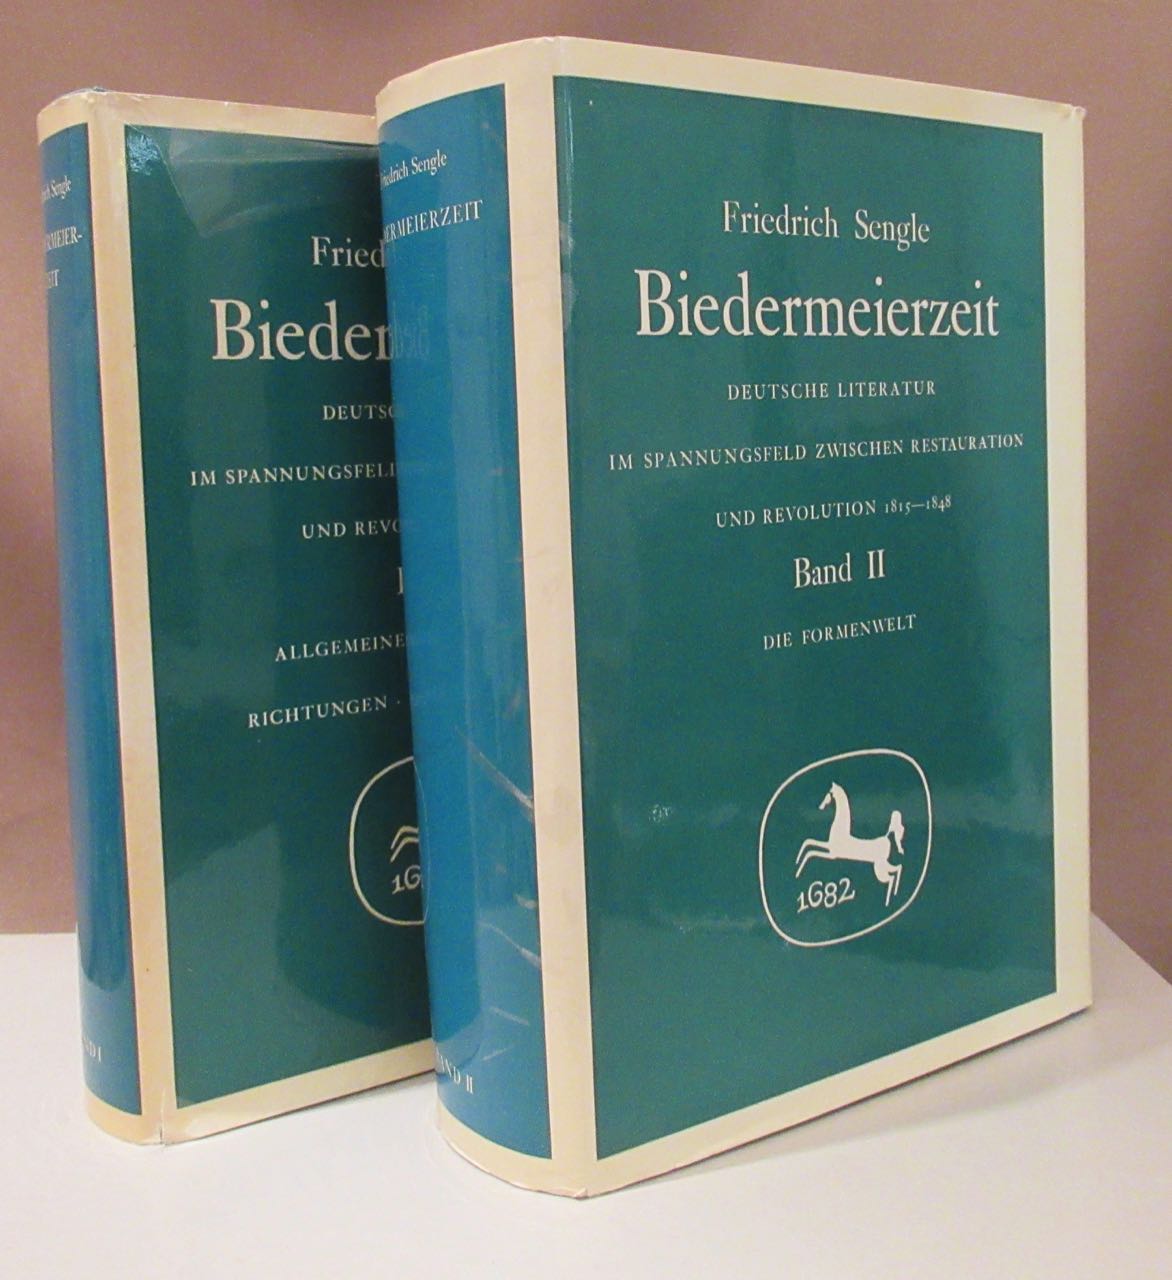 Biedermeierzeit. Deutsche Literatur im Spannungsfeld zwischen Restauration und Revolution 1815 - 1848. Bd 1 - 2 (von 3 Bdn). - Sengle, Friedrich.